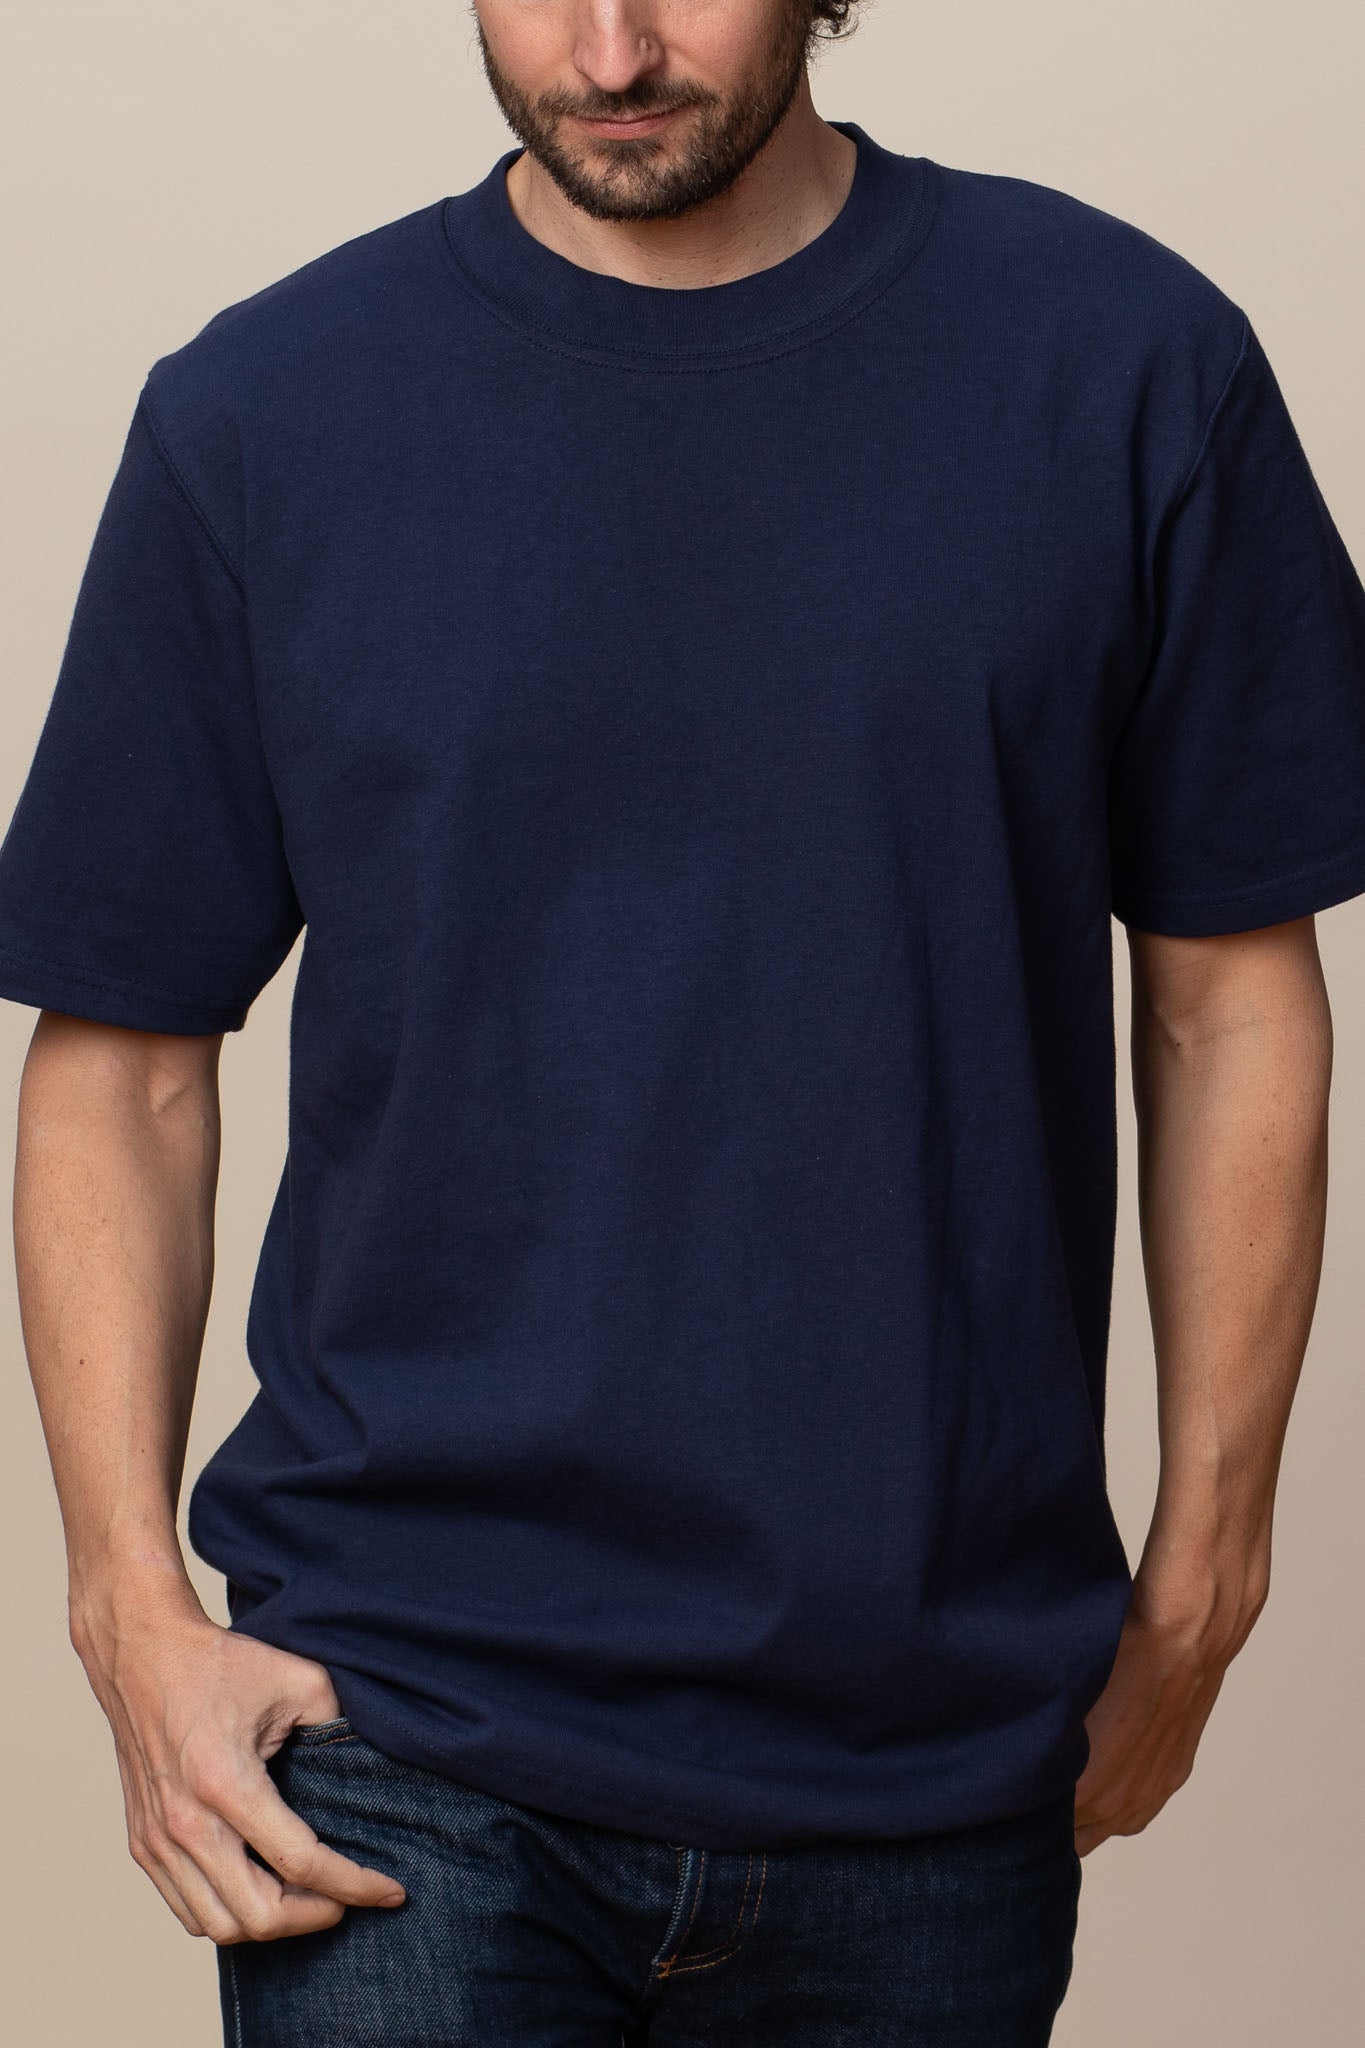 Goodwear USA Adult Heavyweight T Shirt 100% Cotton Short Sleeve Shirt